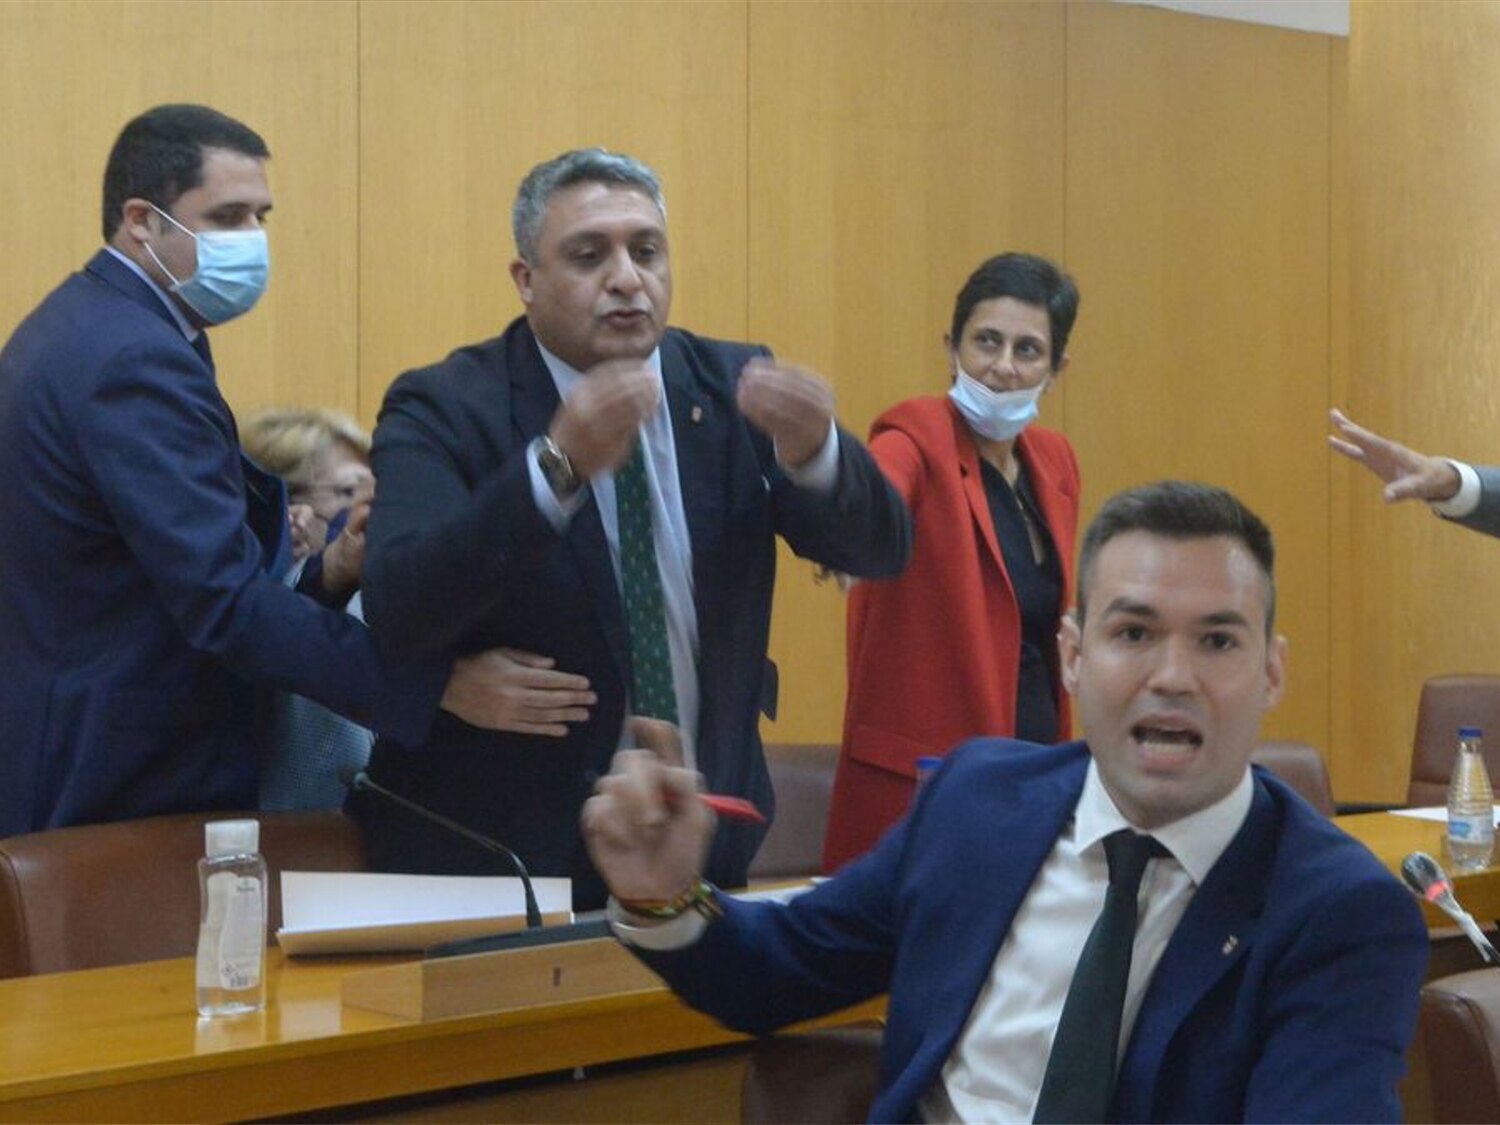 Una jueza propone juzgar por delito de odio al diputado de Ceuta que llamó "cobardes fascistas" a los líderes de VOX